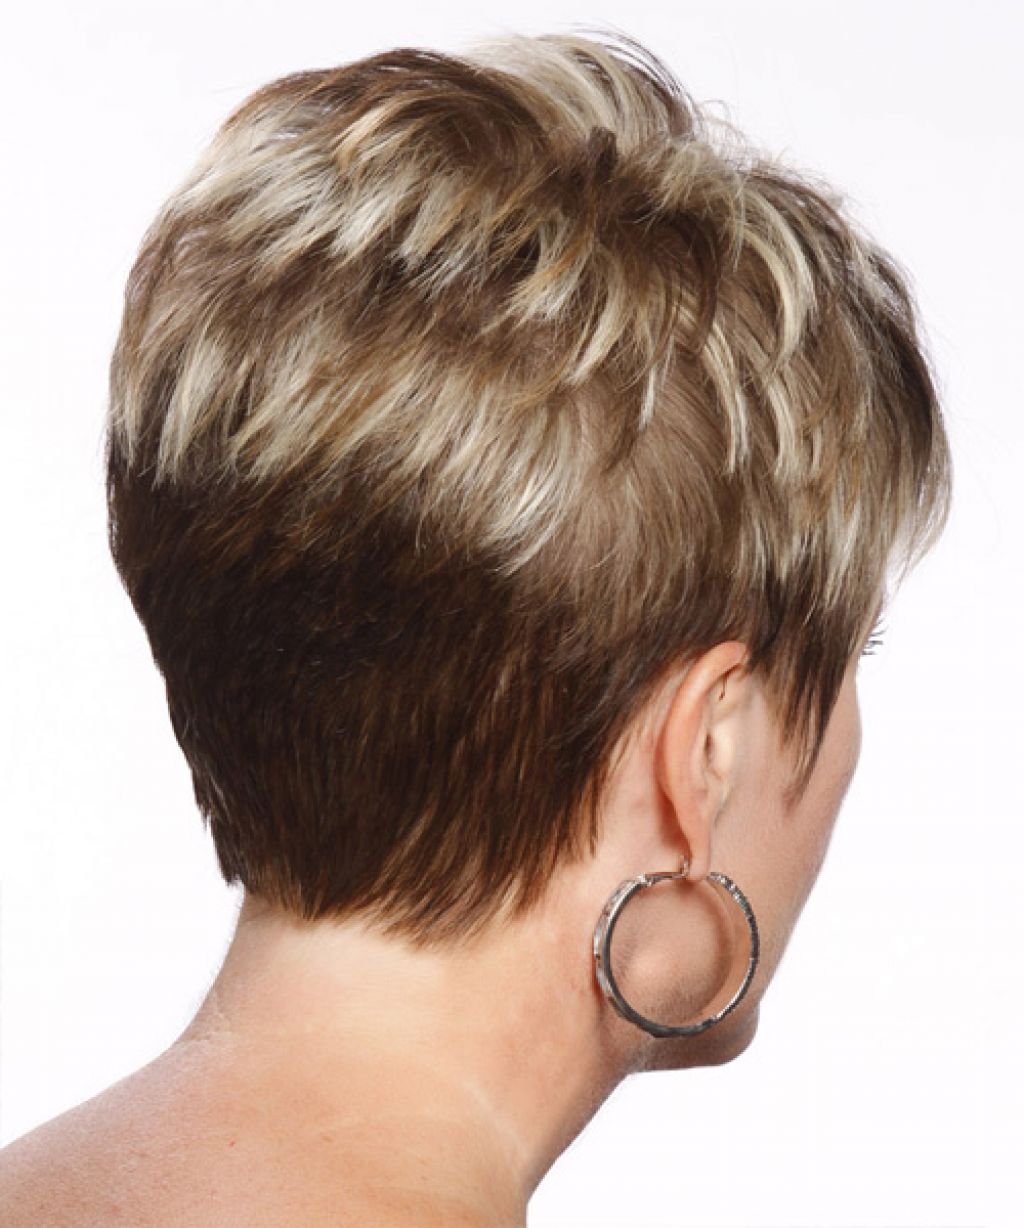 Стрижка гаврош на короткие волосы для женщин за 50 вид сзади и спереди фото